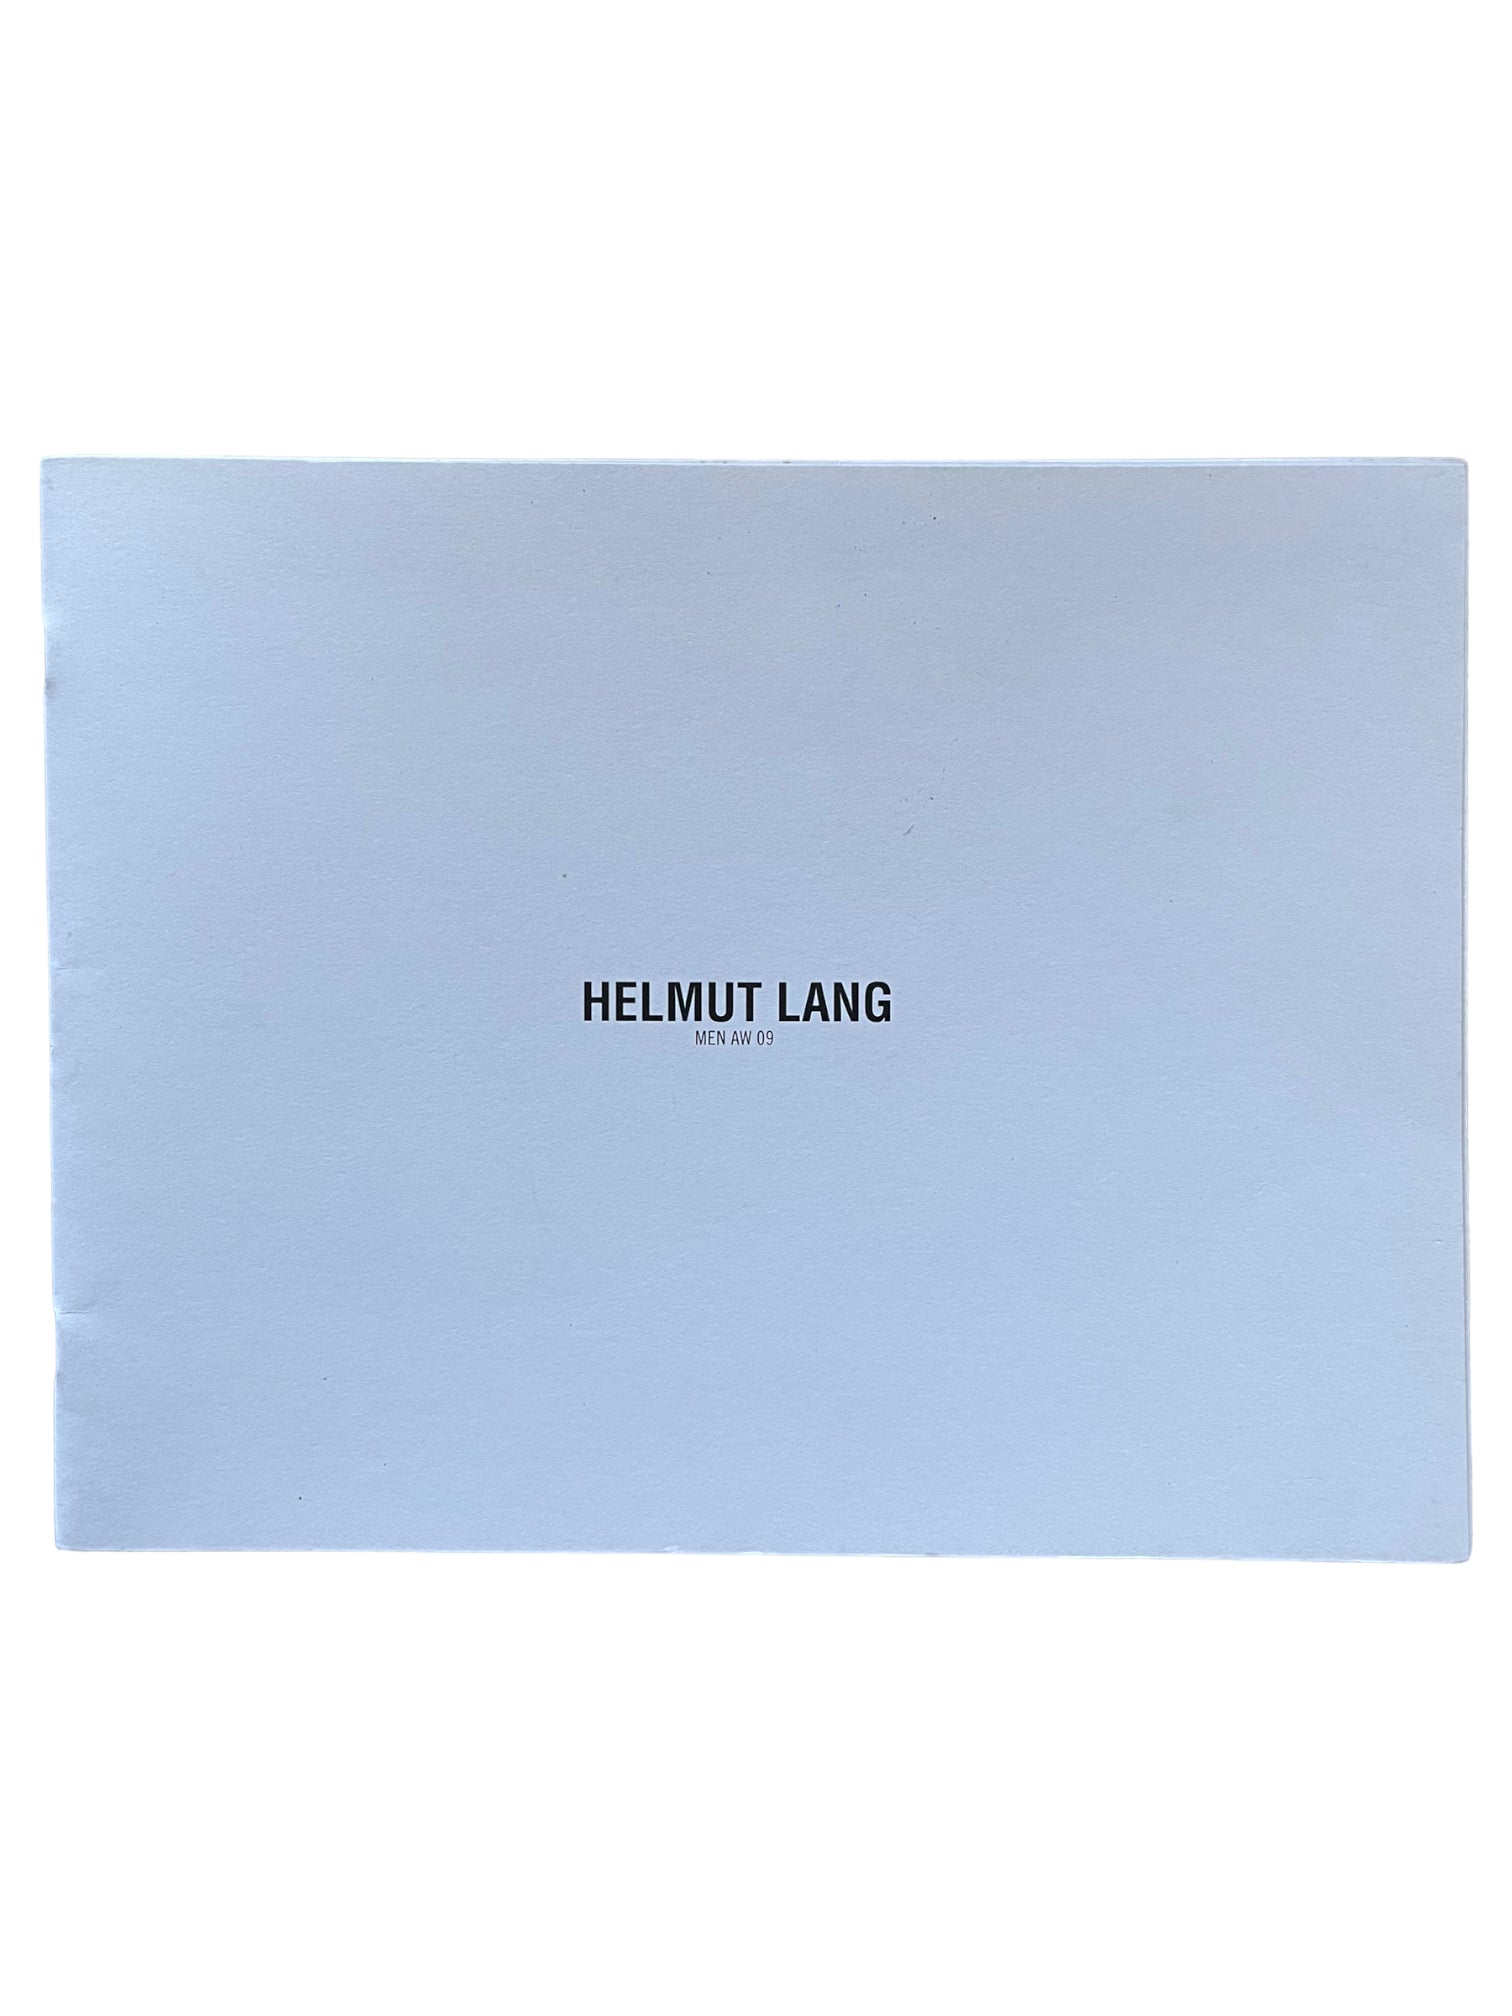 Helmut Lang Mens A/W 09